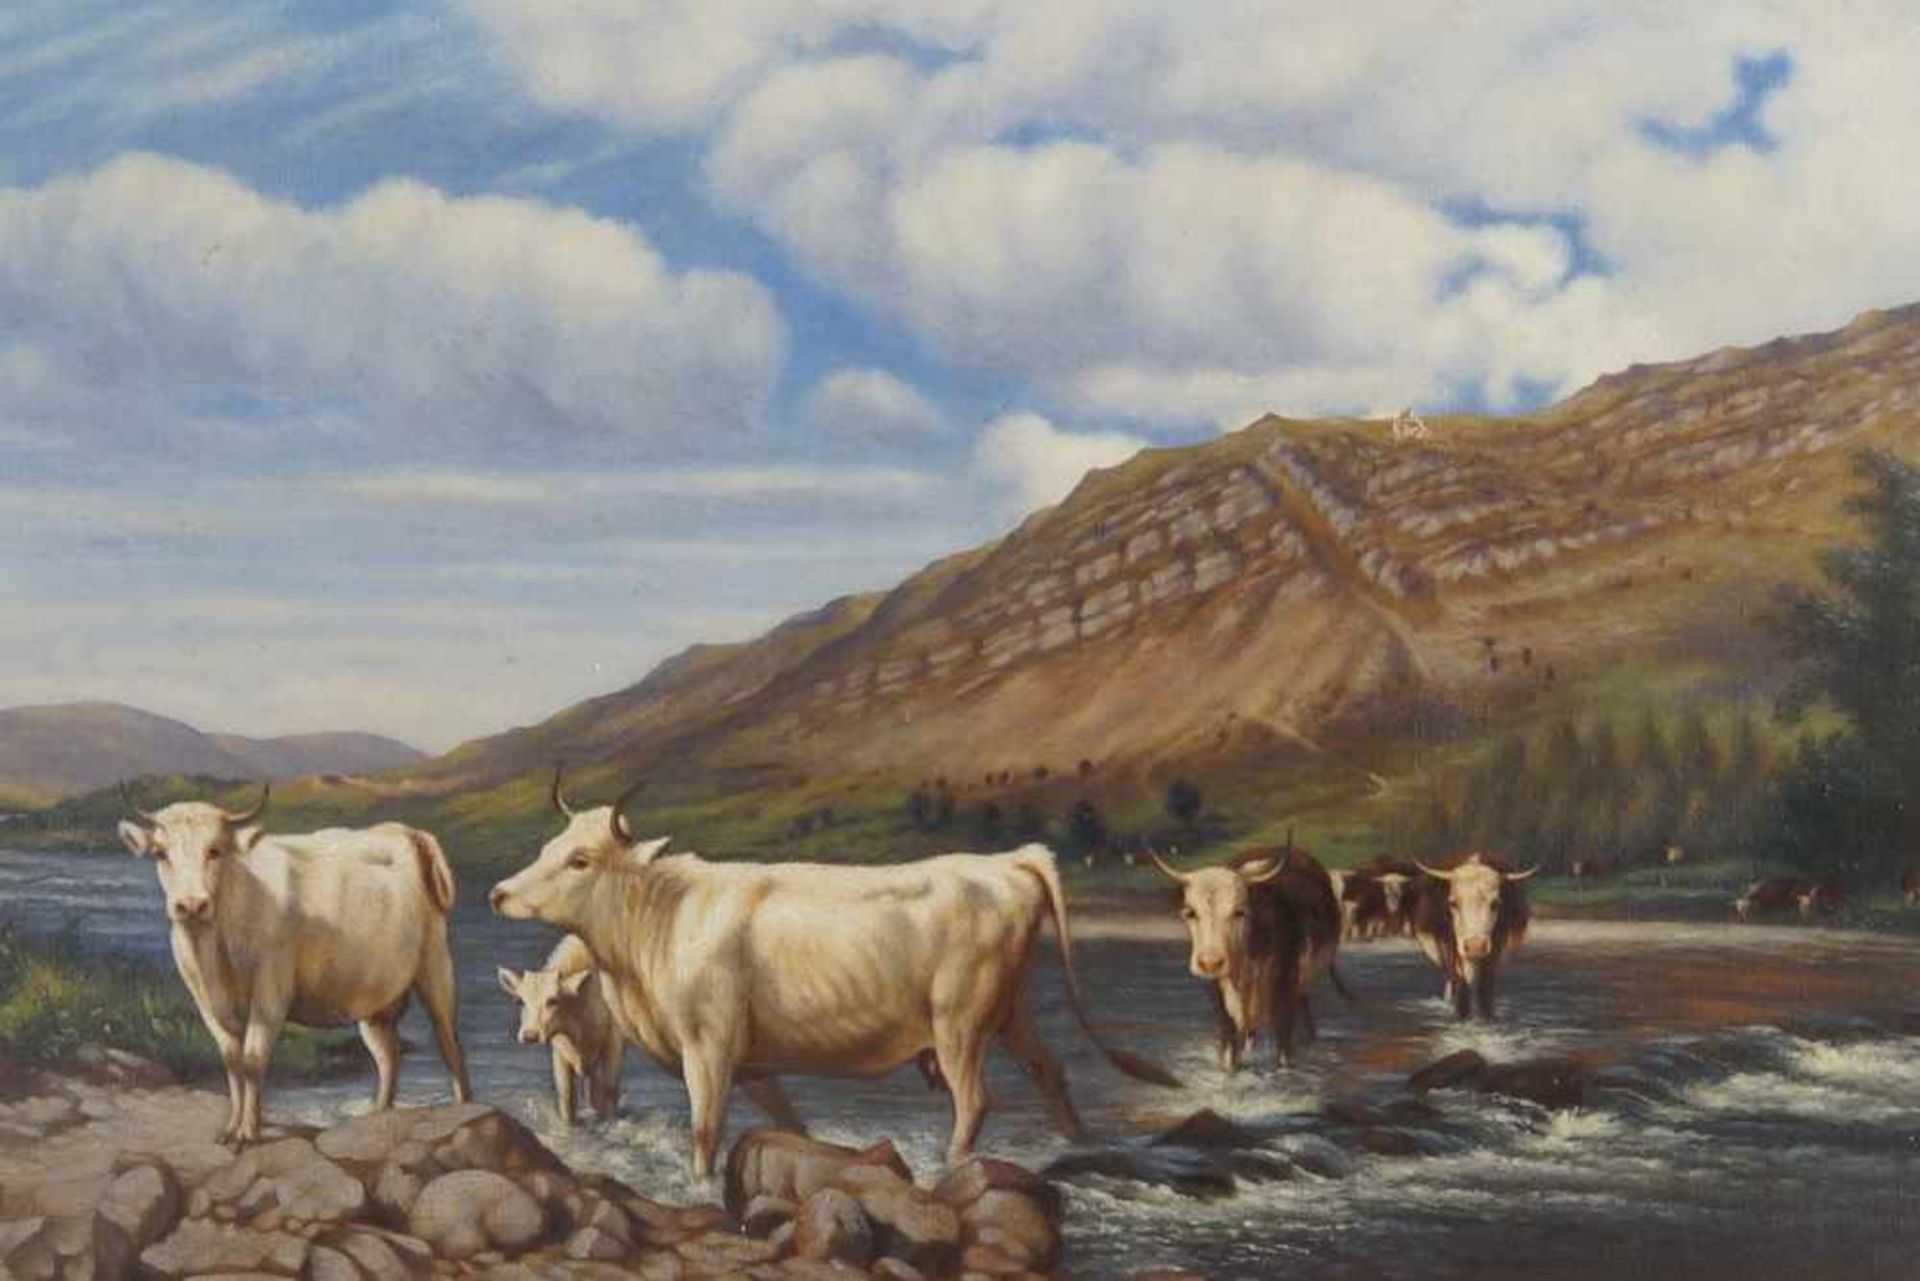 Kühe am Fluss, auf der Rückseite bezeichnet, Öl auf Leinwand, gerahmt, besch., 45x76cm- - -24.00 % - Bild 3 aus 7